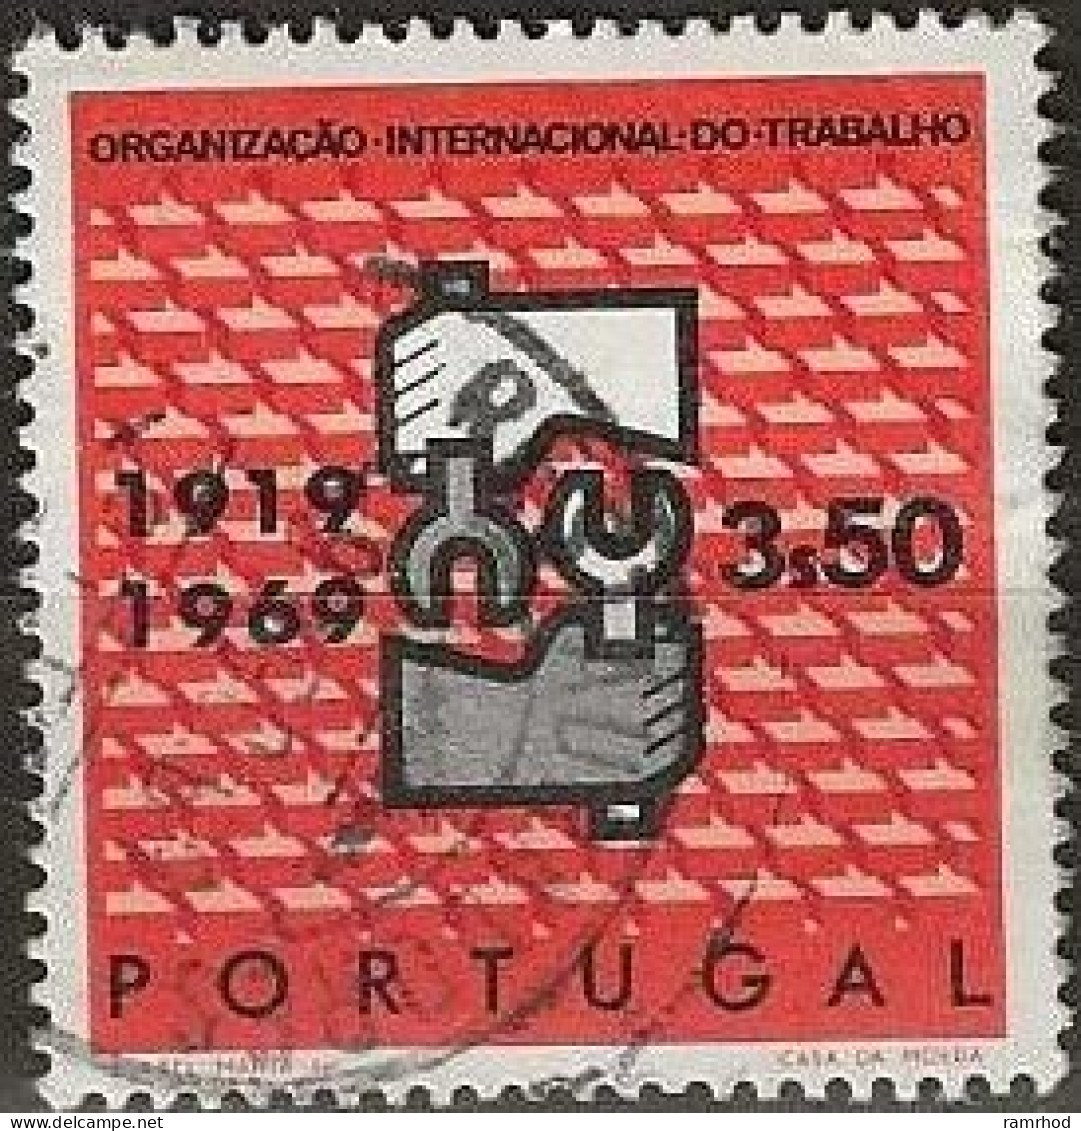 PORTUGAL 1969 50th Anniversary Of ILO - 3e50 - ILO Emblem FU - Usado